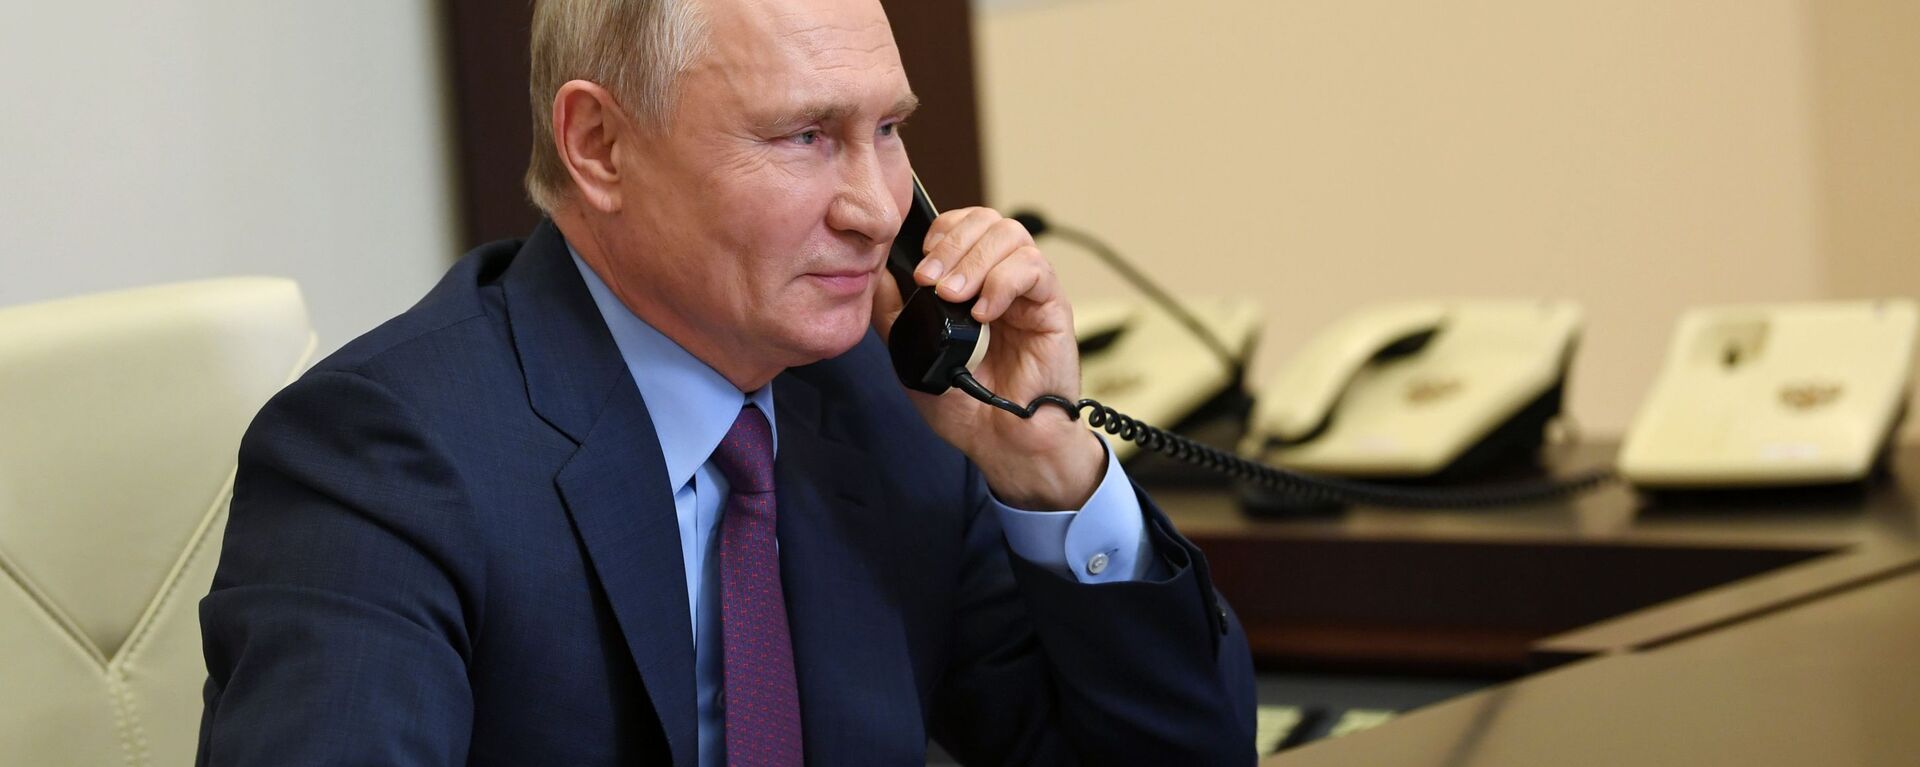 Президент России Владимир Путин разговаривает по телефону - Sputnik Lietuva, 1920, 31.03.2021